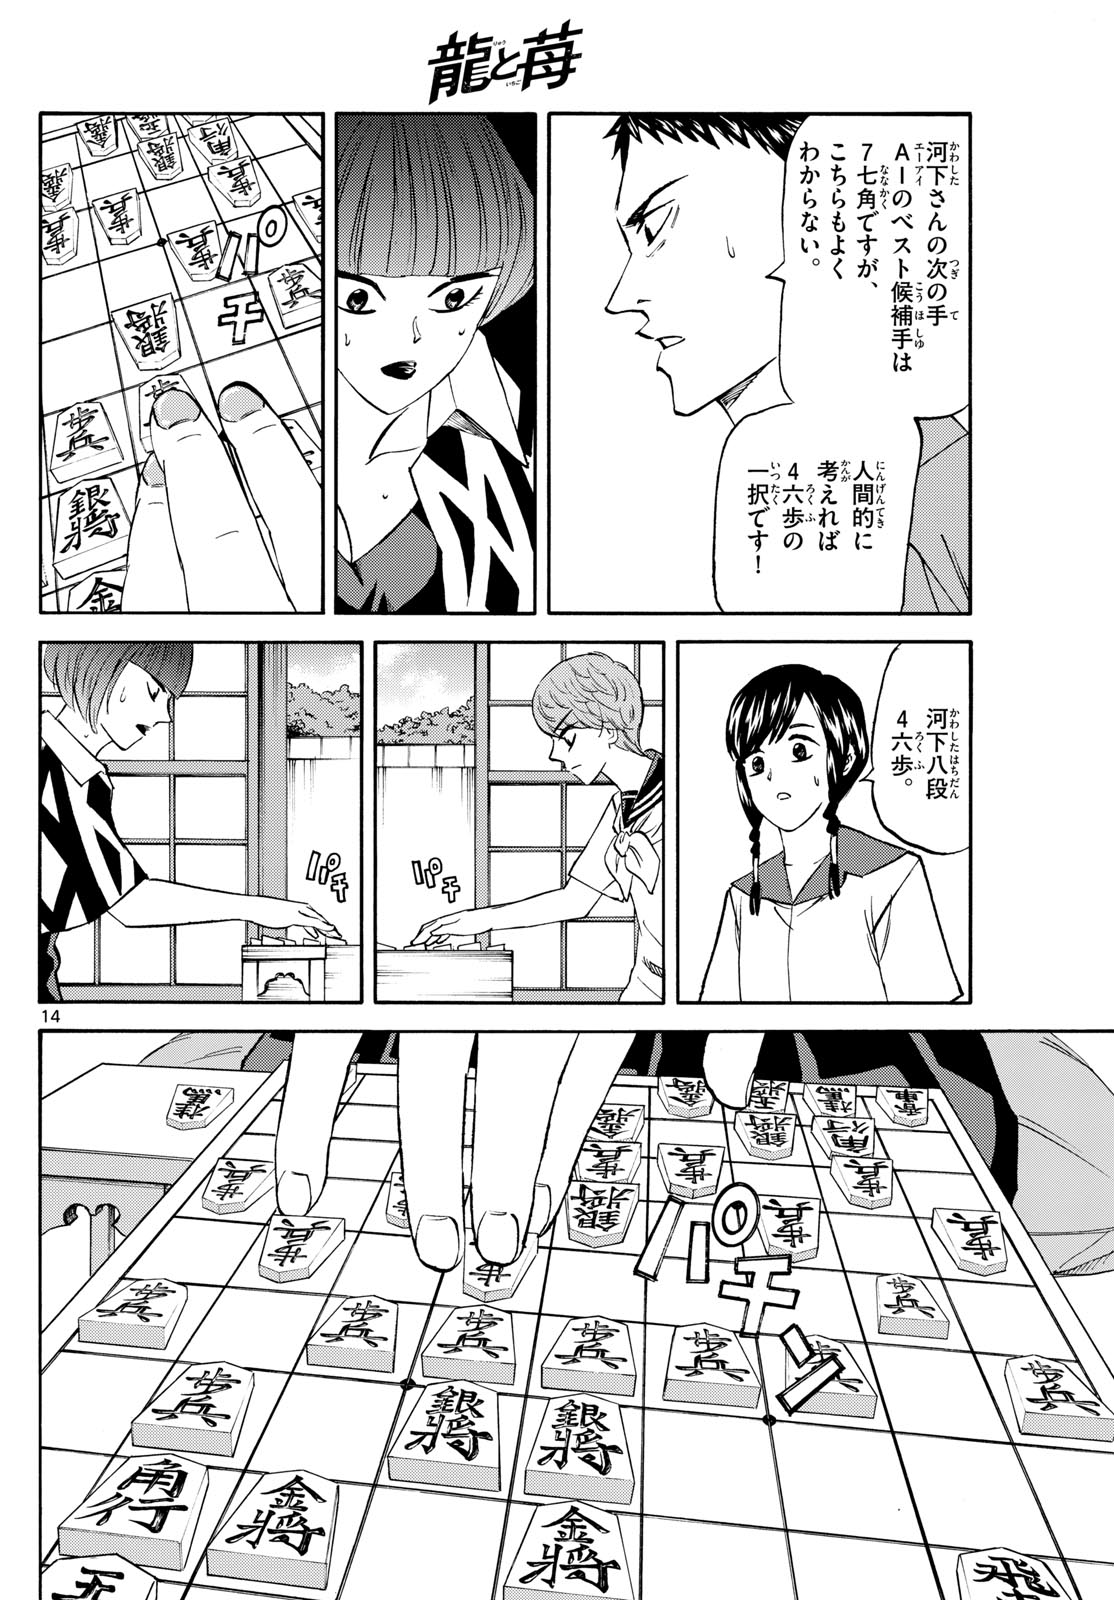 Tatsu to Ichigo - Chapter 200 - Page 14